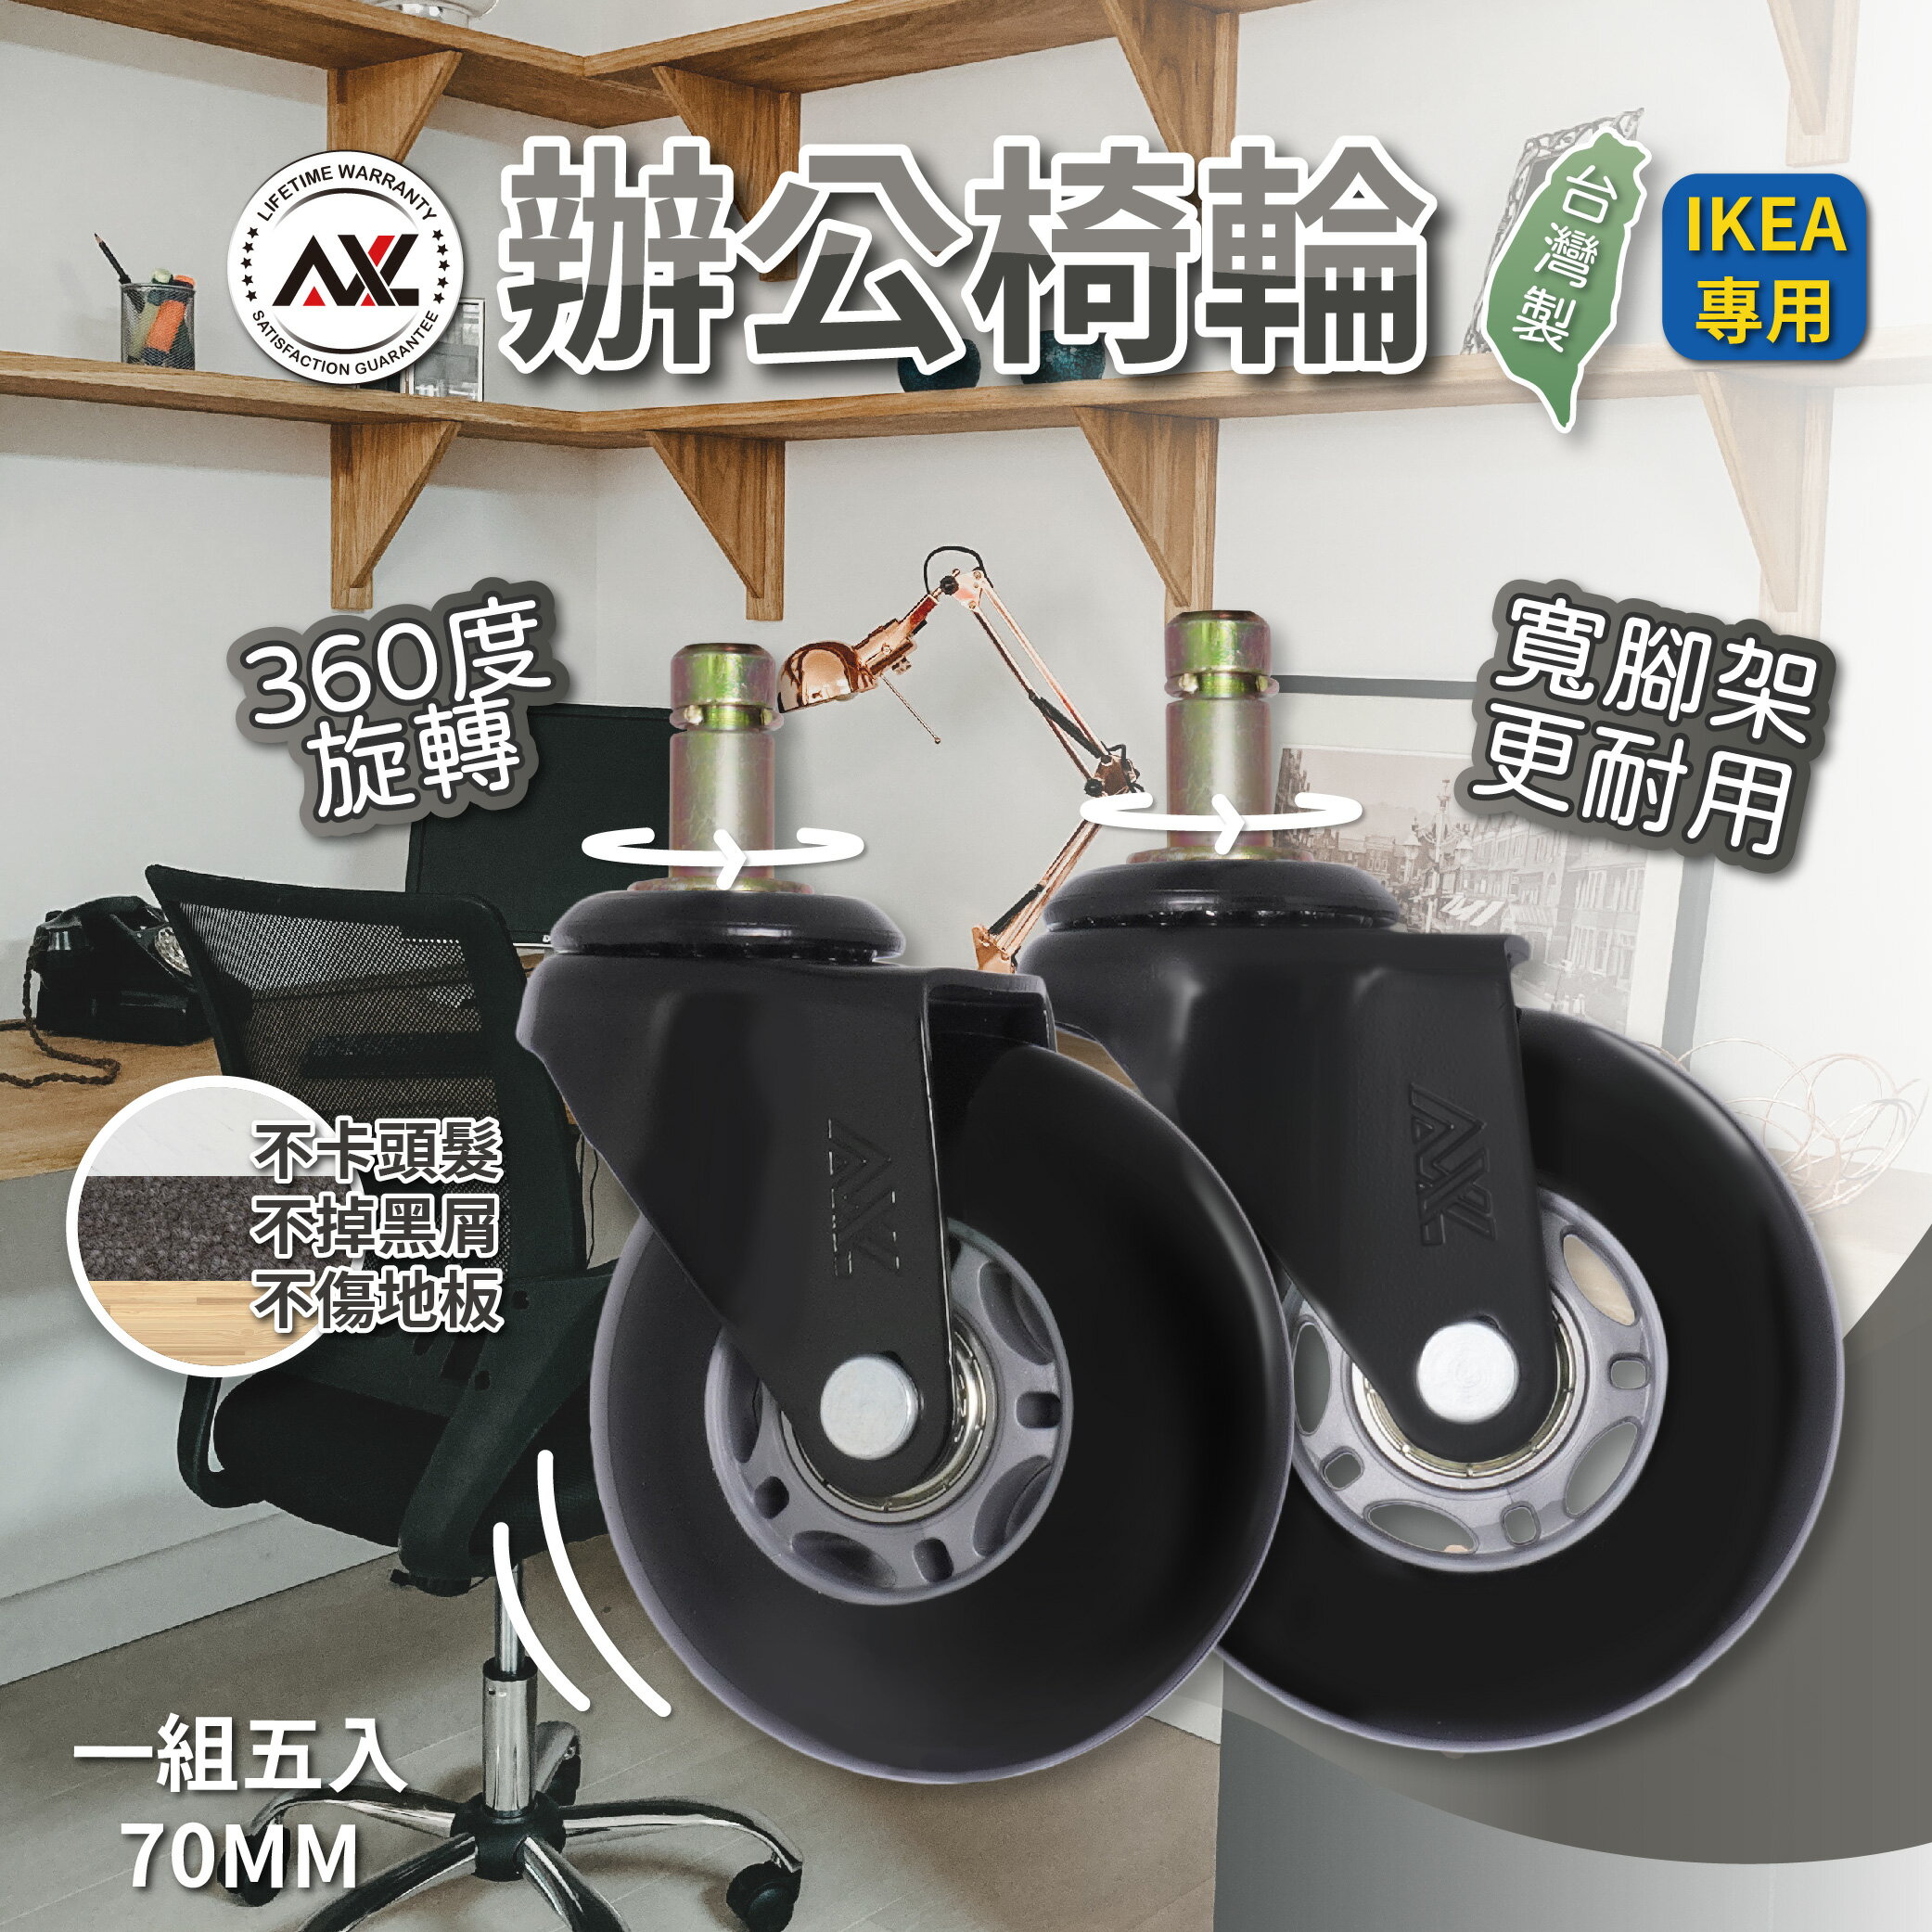 IKEA腳輪 辦公室椅輪-大肥腳灰黑 10MM上芯 PU輪,靜音耐用,不掉黑屑,不刮傷木質塑膠地板 (台灣製)